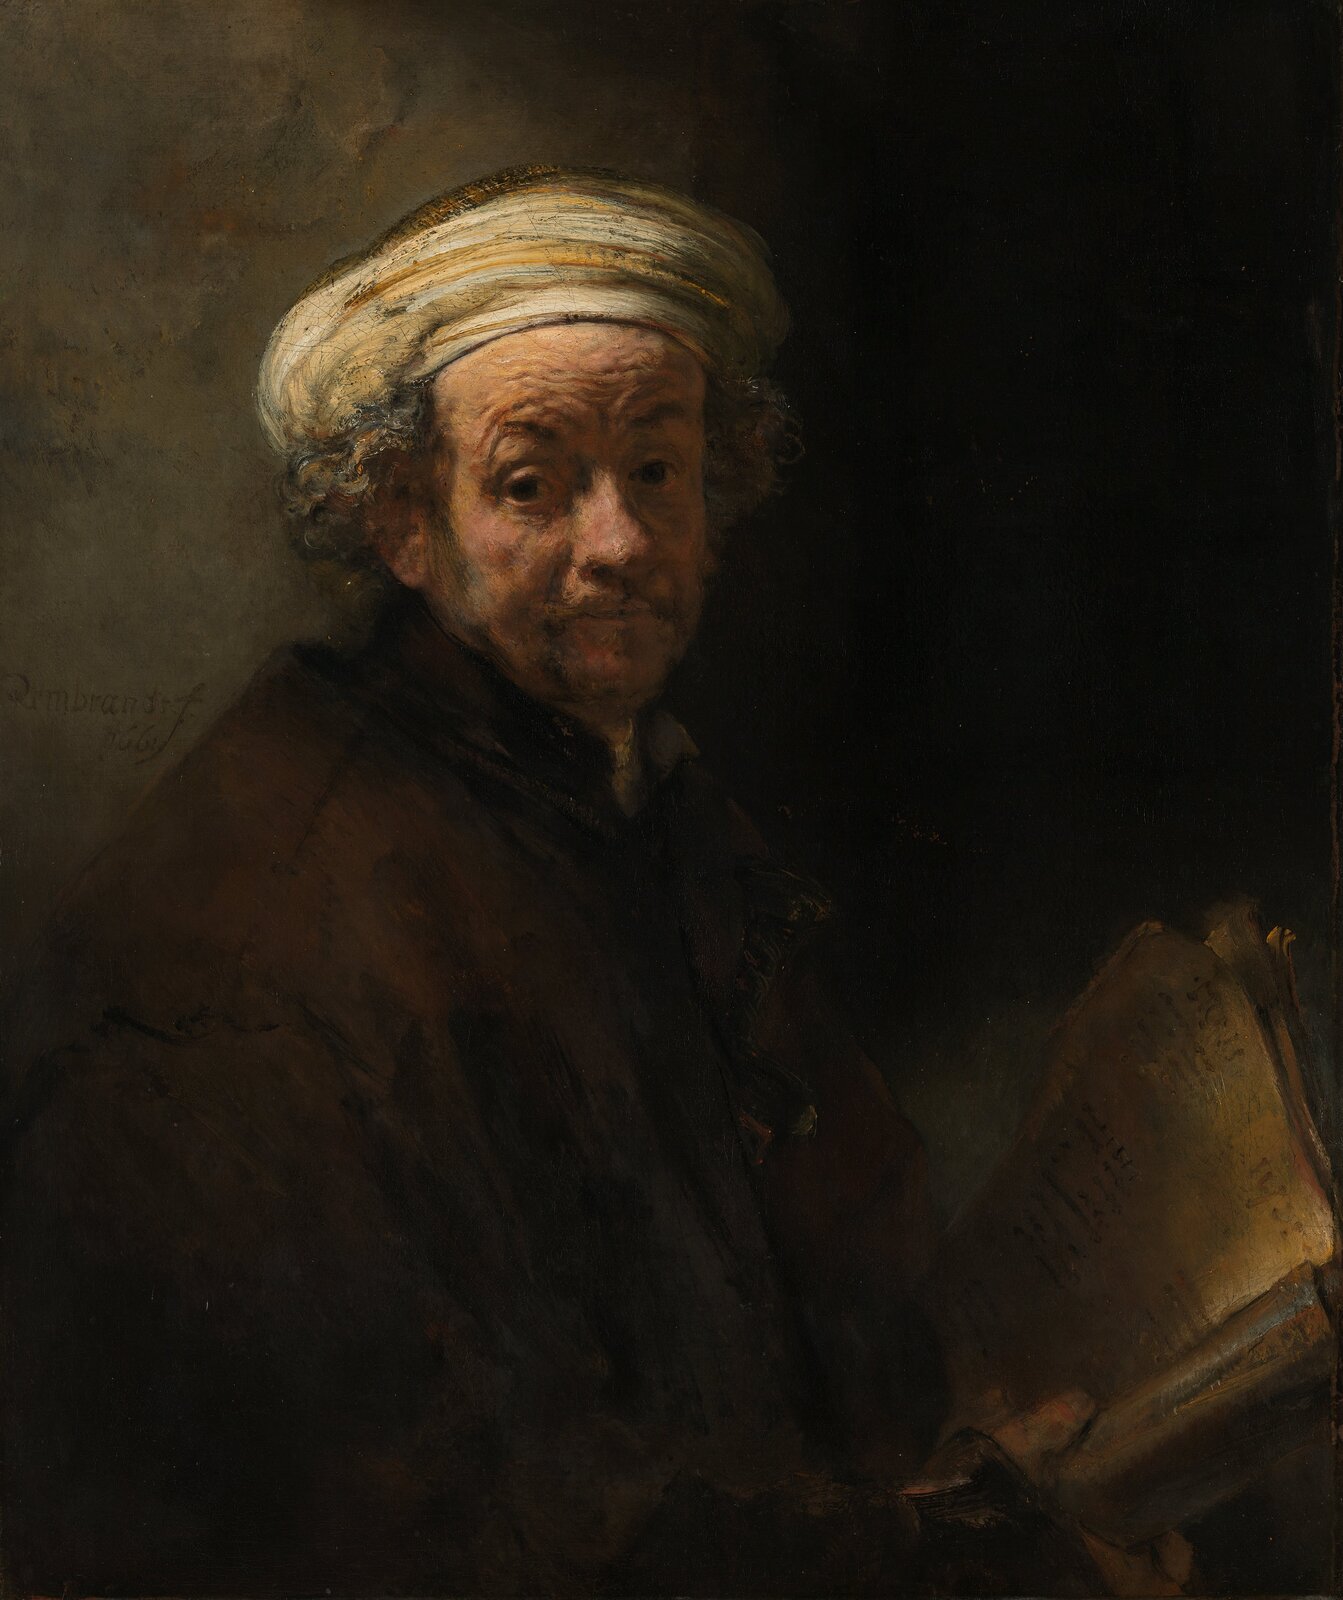 Ilustracja przedstawia obraz Rembrandta van Rijna „Autoportret jako Paweł Apostoł”. Na ciemnym tle znajduje się malarz ukazany jako starszy mężczyzna. Ustawiony jest bokiem, ale głowę ma odwróconą centralnie i patrzy w stronę widza. Ma na sobie brązowy strój. Na głowie założoną ma zawiniętą białą chustę, spod której wystają kręcone włosy. Broda pokryta jest zarostem. W prawym ręku trzyma otwartą księgę. Tło obrazu utrzymane jest w szaro-brązowych barwach, jaśniejsze z lewej strony.